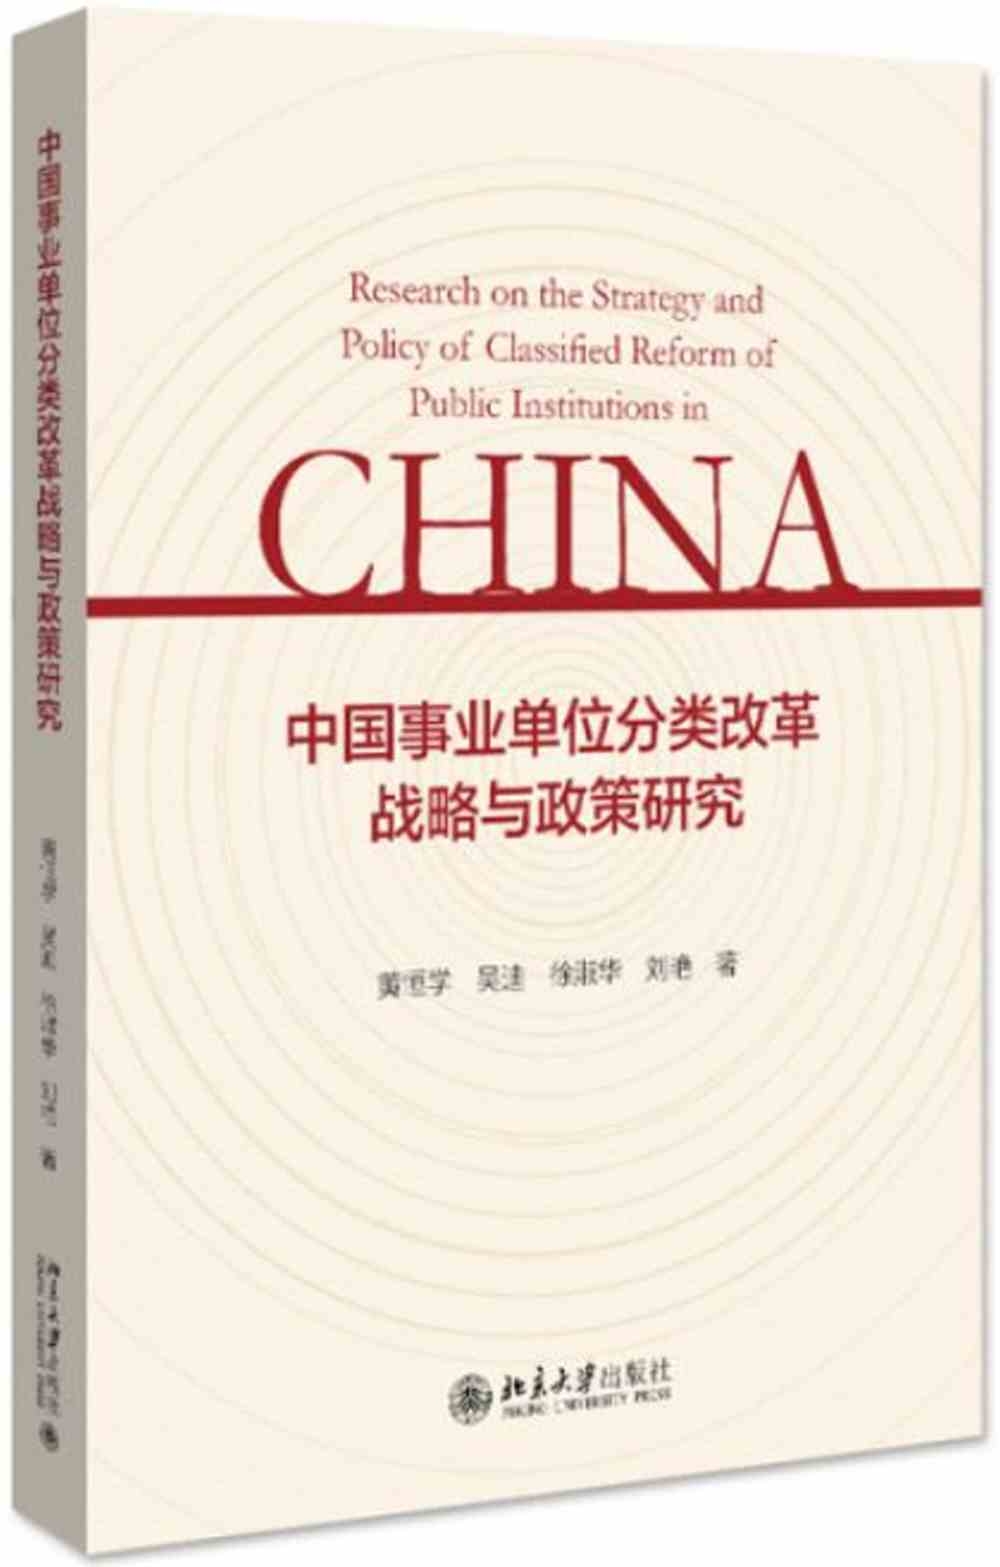 中國事業單位分類改革戰略與政策研究